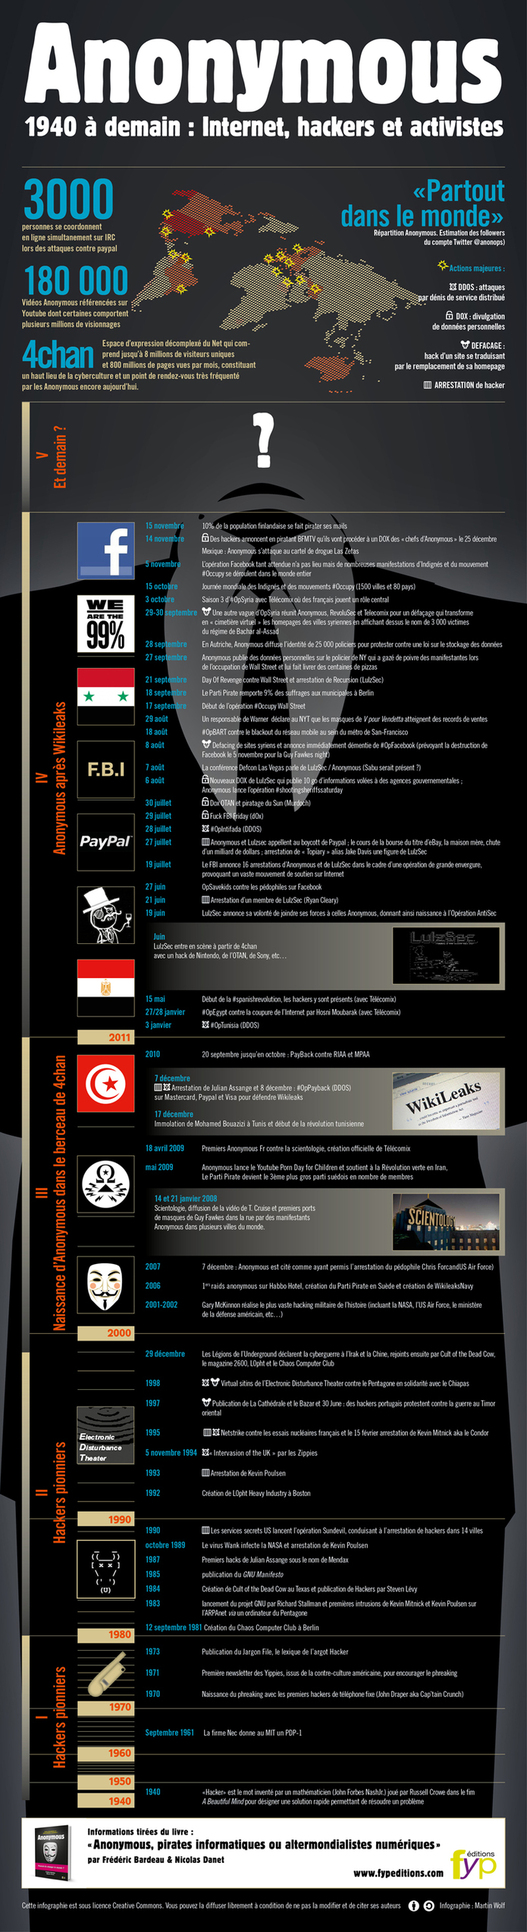 L'histoire d'Anonymous depuis 1940 en 1 image